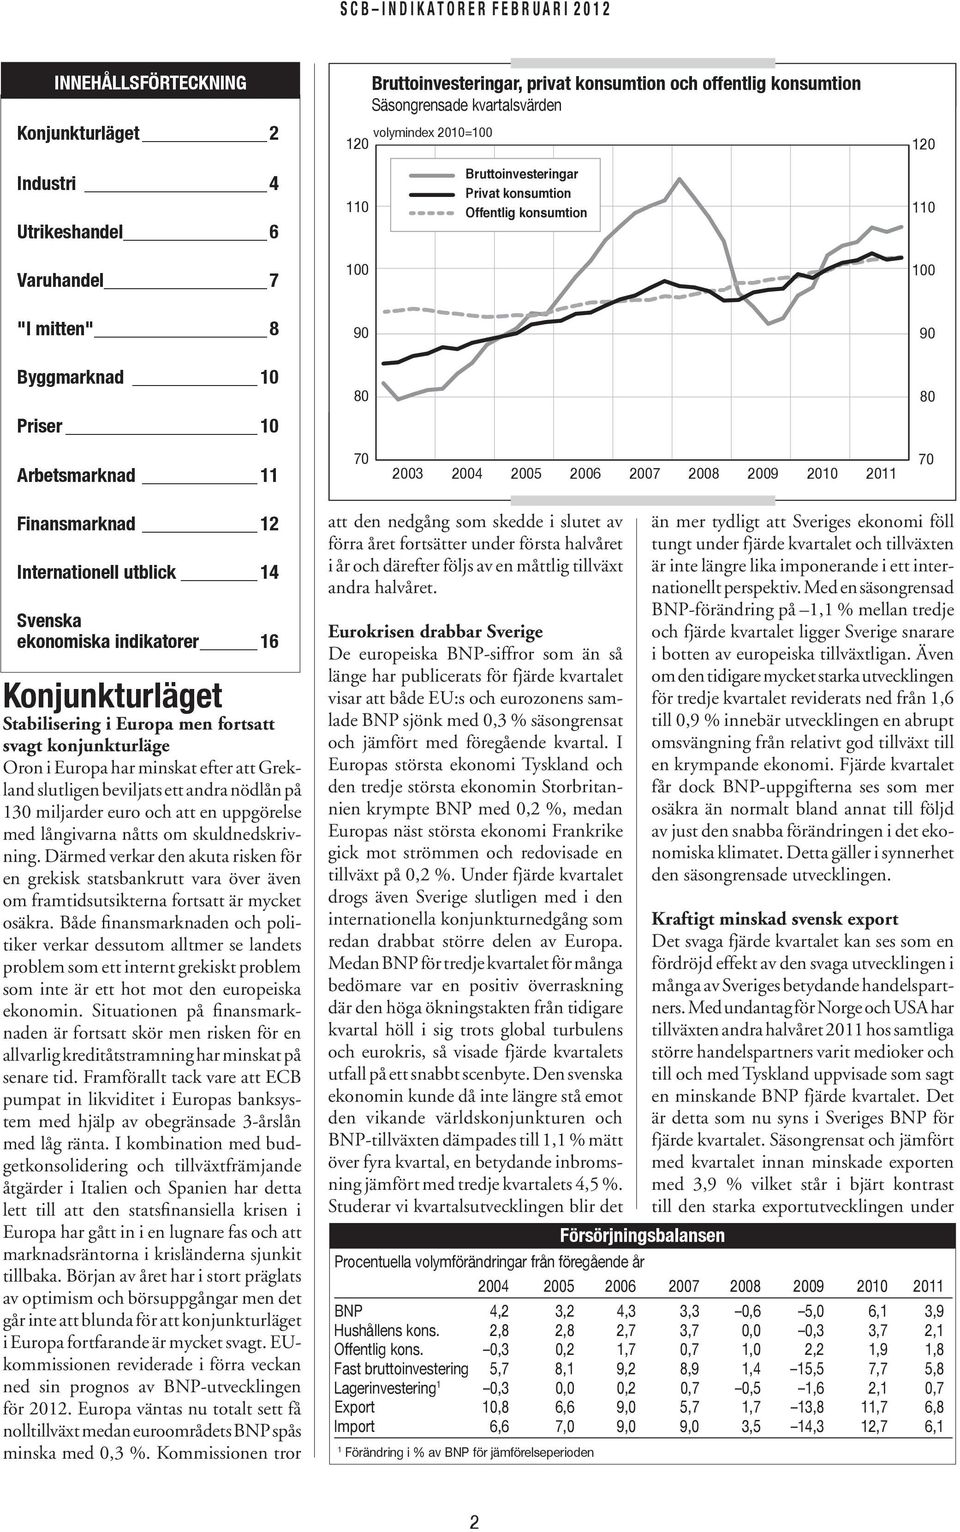 Internationell utblick 14 Svenska ekonomiska indikatorer 16 Konjunkturläget Stabilisering i Europa men fortsatt svagt konjunkturläge Oron i Europa har minskat efter att Grekland slutligen beviljats